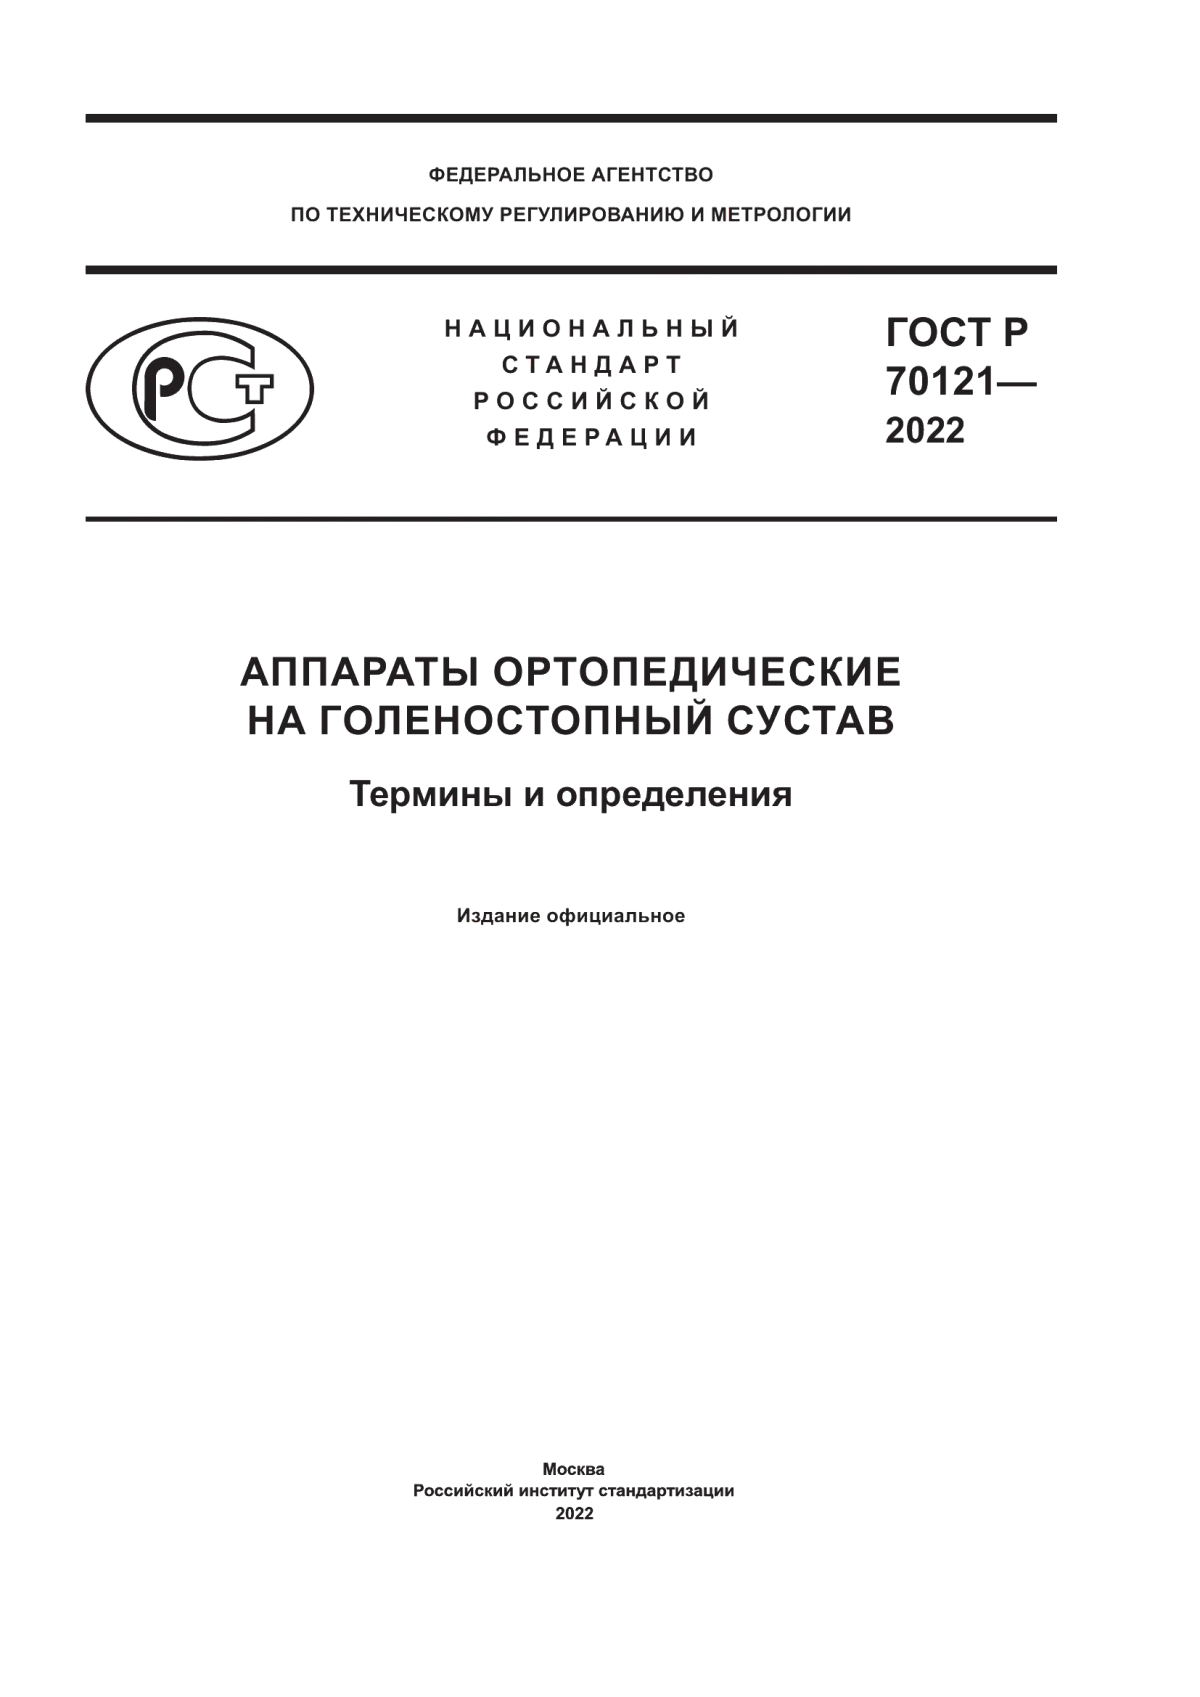 ГОСТ Р 70121-2022 Аппараты ортопедические на голеностопный сустав. Термины и определения